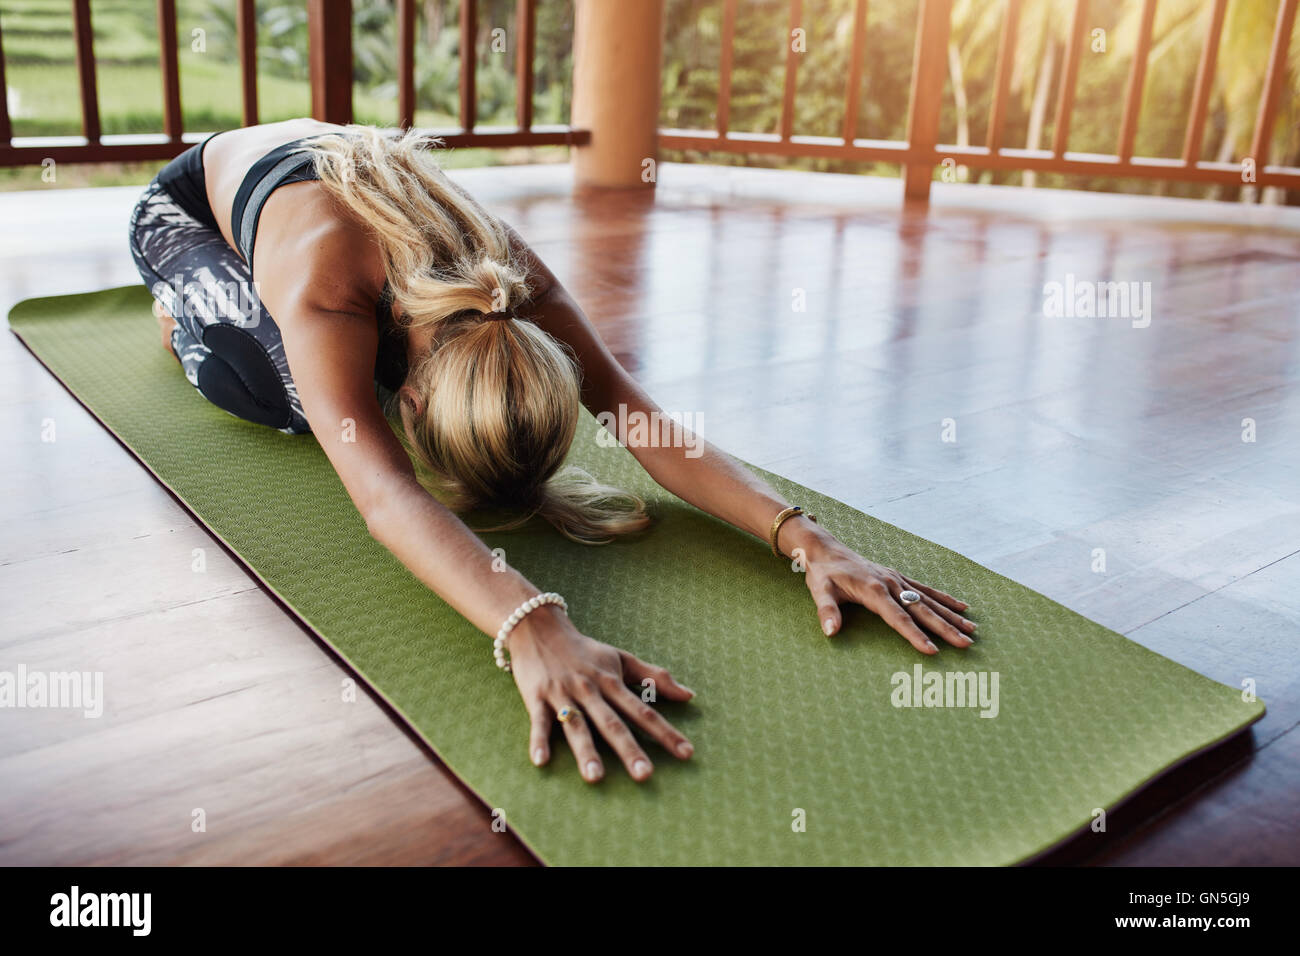 Junge Frau tut stretching Workout im Fitness-Matte. Frauen Yoga auf Gymnastikmatte in Turnhalle durchführen. Kind-Pose, Balasana. Stockfoto